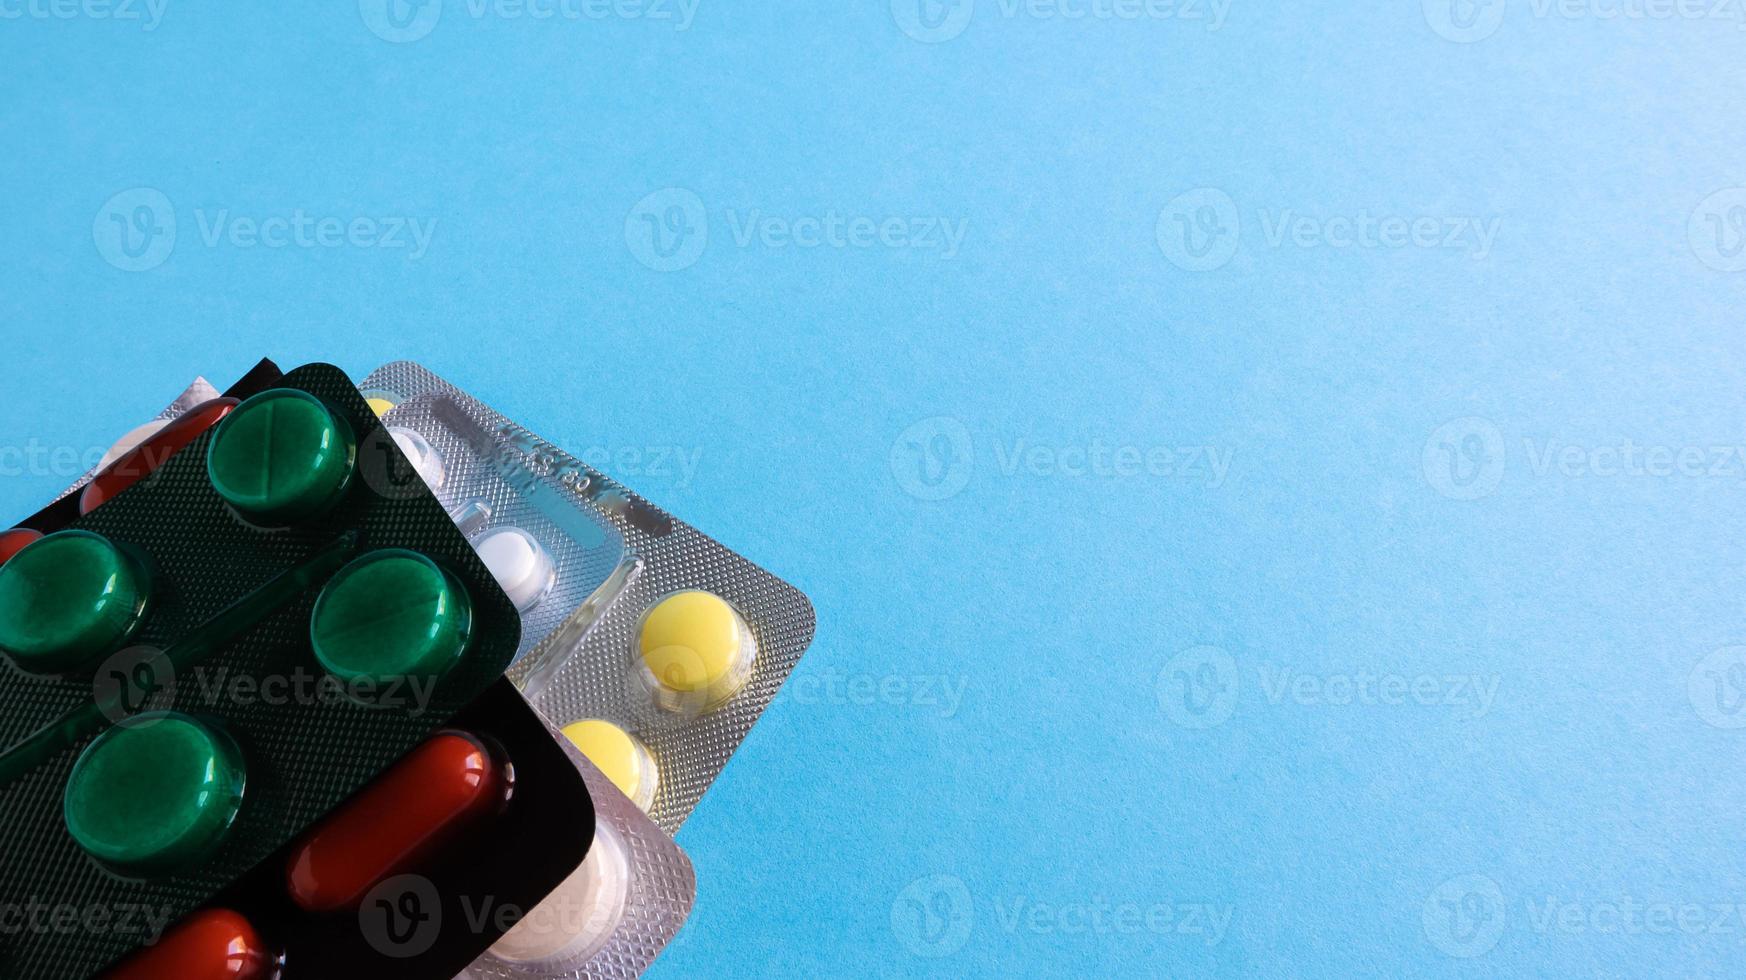 pacotes de comprimidos de várias formas e cores estão empilhados sobre um fundo azul. as cápsulas são embaladas em embalagens de blister. medicamentos diferentes. tratamento medicamentoso. foto de saúde. copie o espaço.